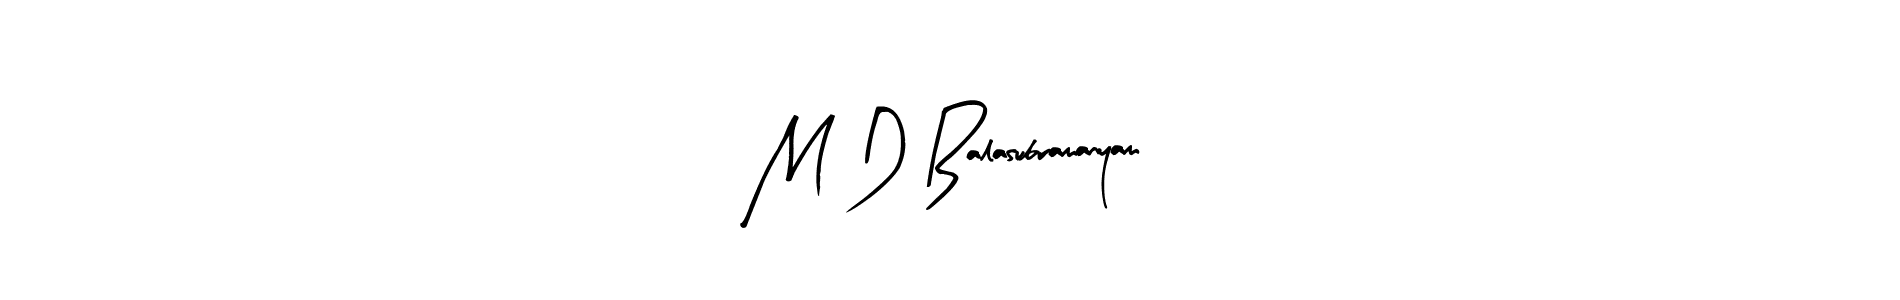 How to Draw M D Balasubramanyam signature style? Arty Signature is a latest design signature styles for name M D Balasubramanyam. M D Balasubramanyam signature style 8 images and pictures png